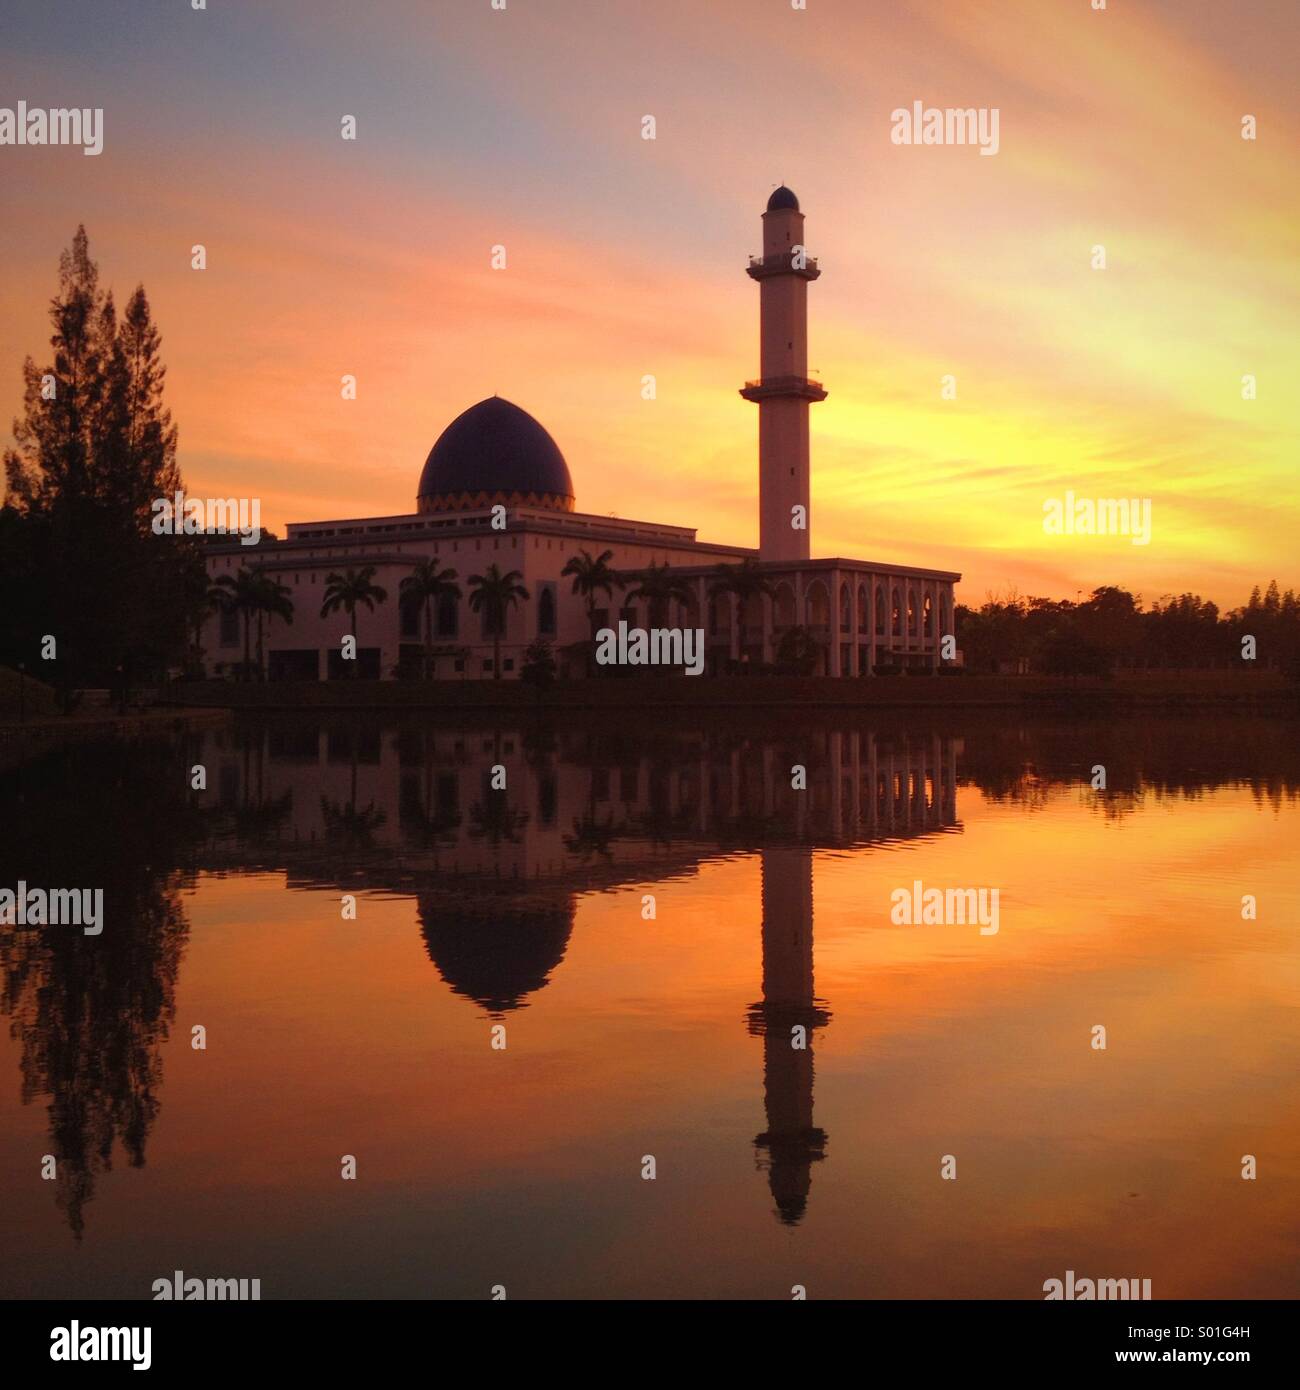 Sonnenaufgang am See in der Nähe einer Moschee Stockfoto